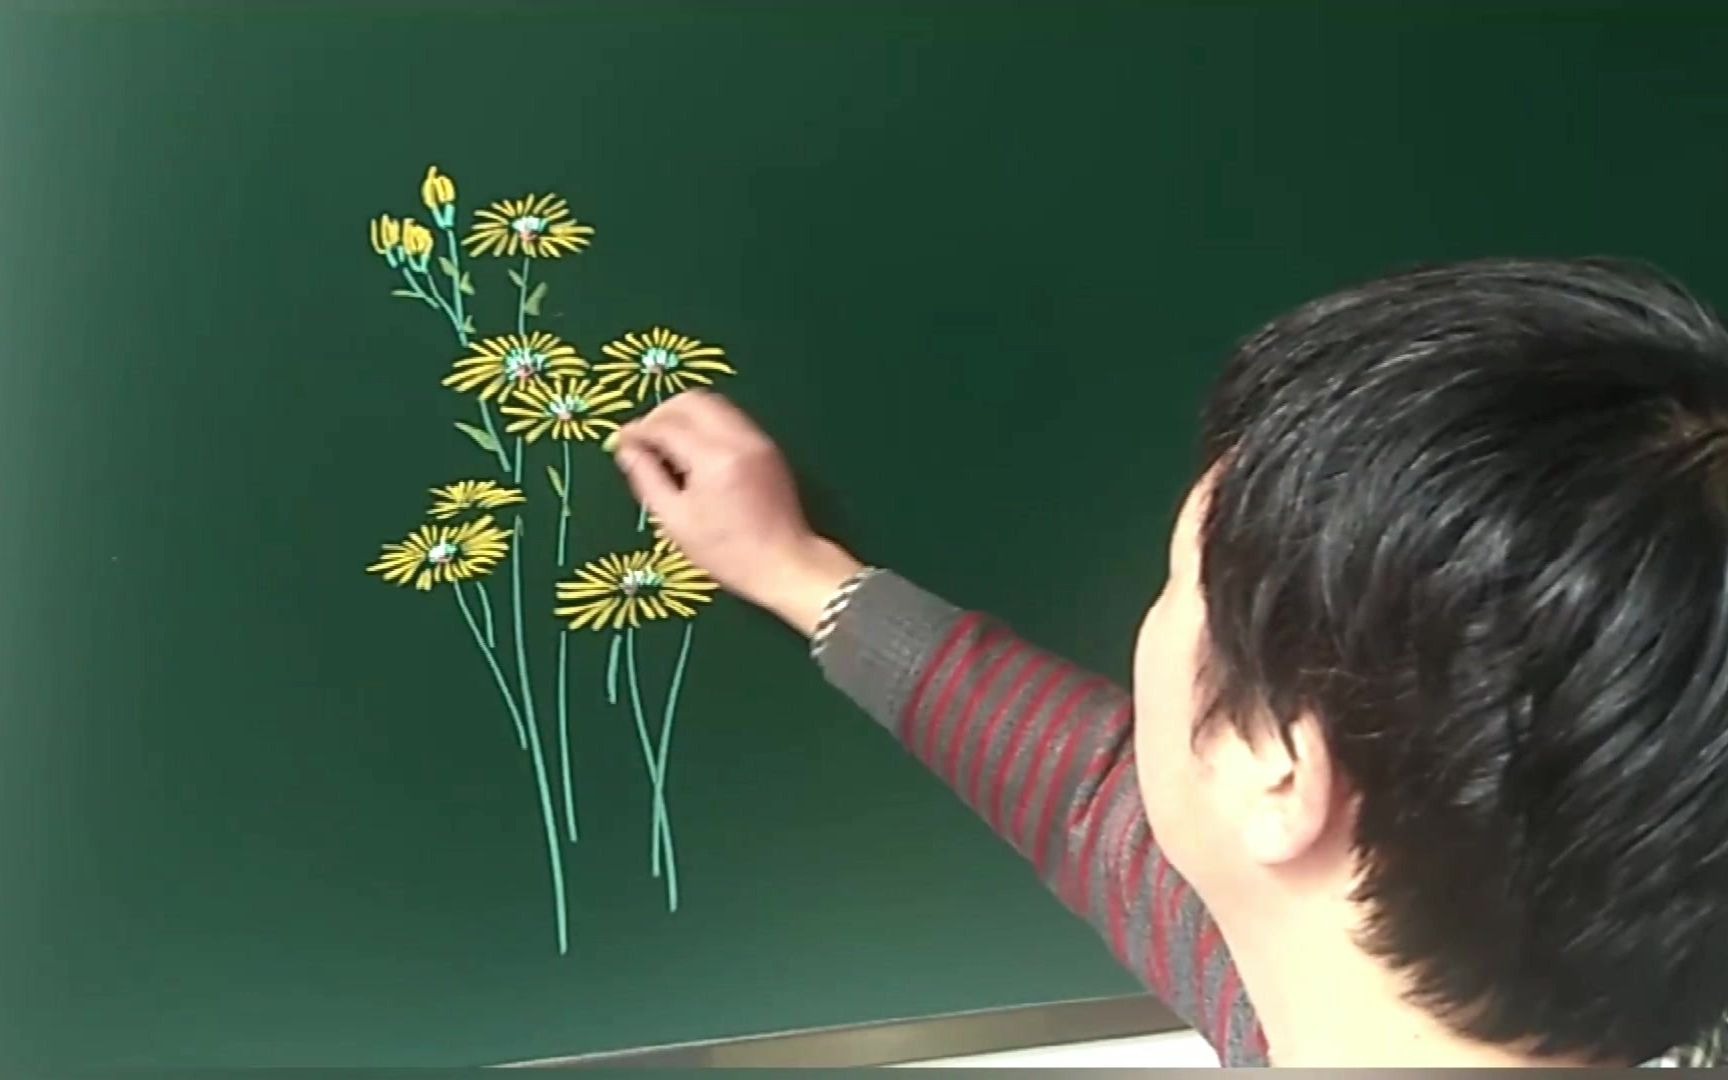 Vẽ hoa cúc bằng phấn là kỹ thuật nghệ thuật mới lạ và đặc biệt. Hãy xem hình và cảm nhận vẻ đẹp thiên nhiên được tái hiện trên bảng với các màu sắc rực rỡ của phấn trắng. Bạn sẽ bị thu hút và muốn tìm hiểu cách làm ra những tác phẩm nghệ thuật ấn tượng như vậy.